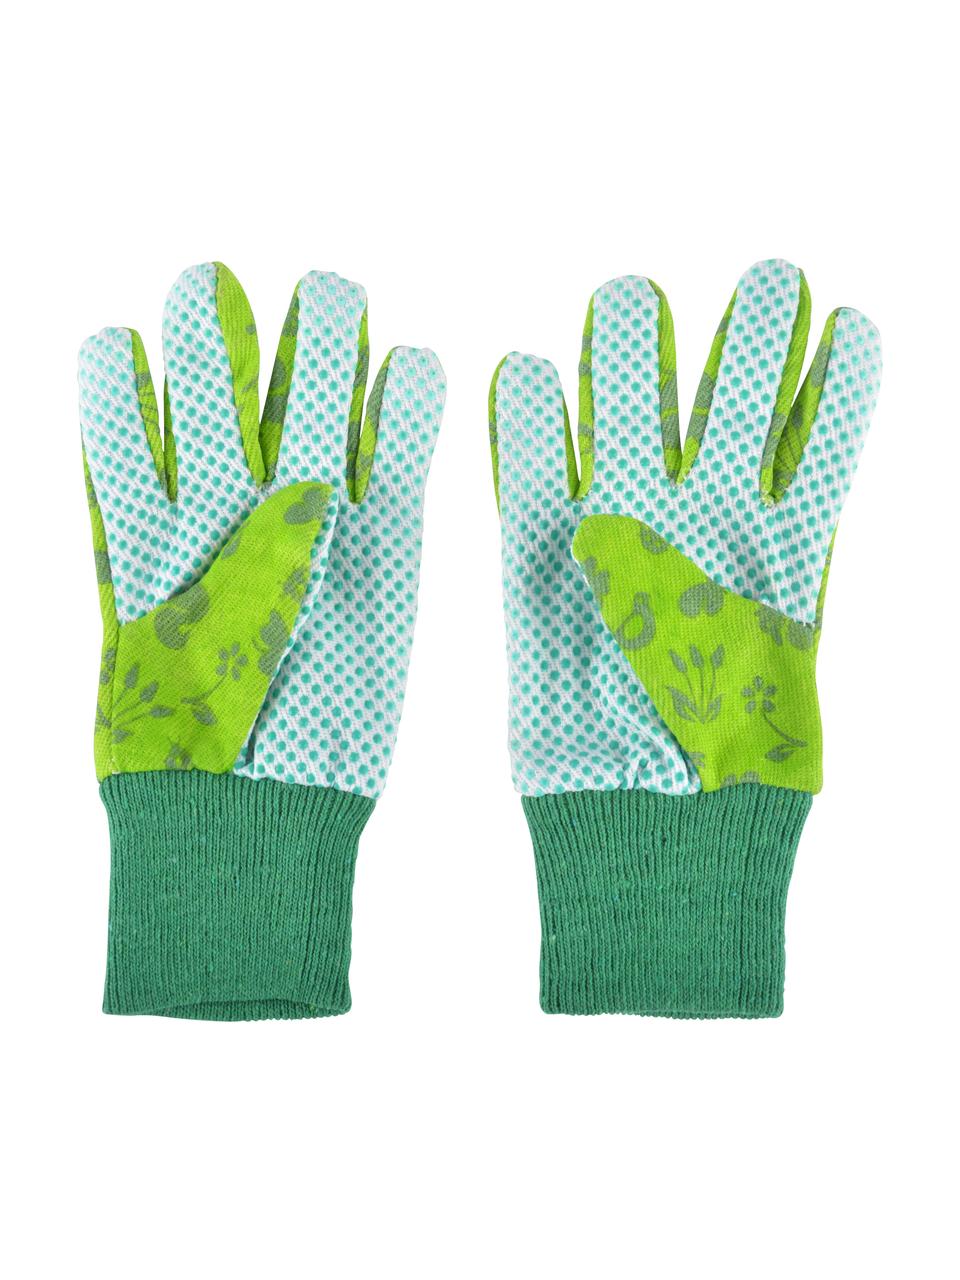 Dětské zahradnické rukavice Little Gardener, Bavlna, polyester, viskóza, PVC, Odstíny zelené, Š 11 cm, V 20 cm